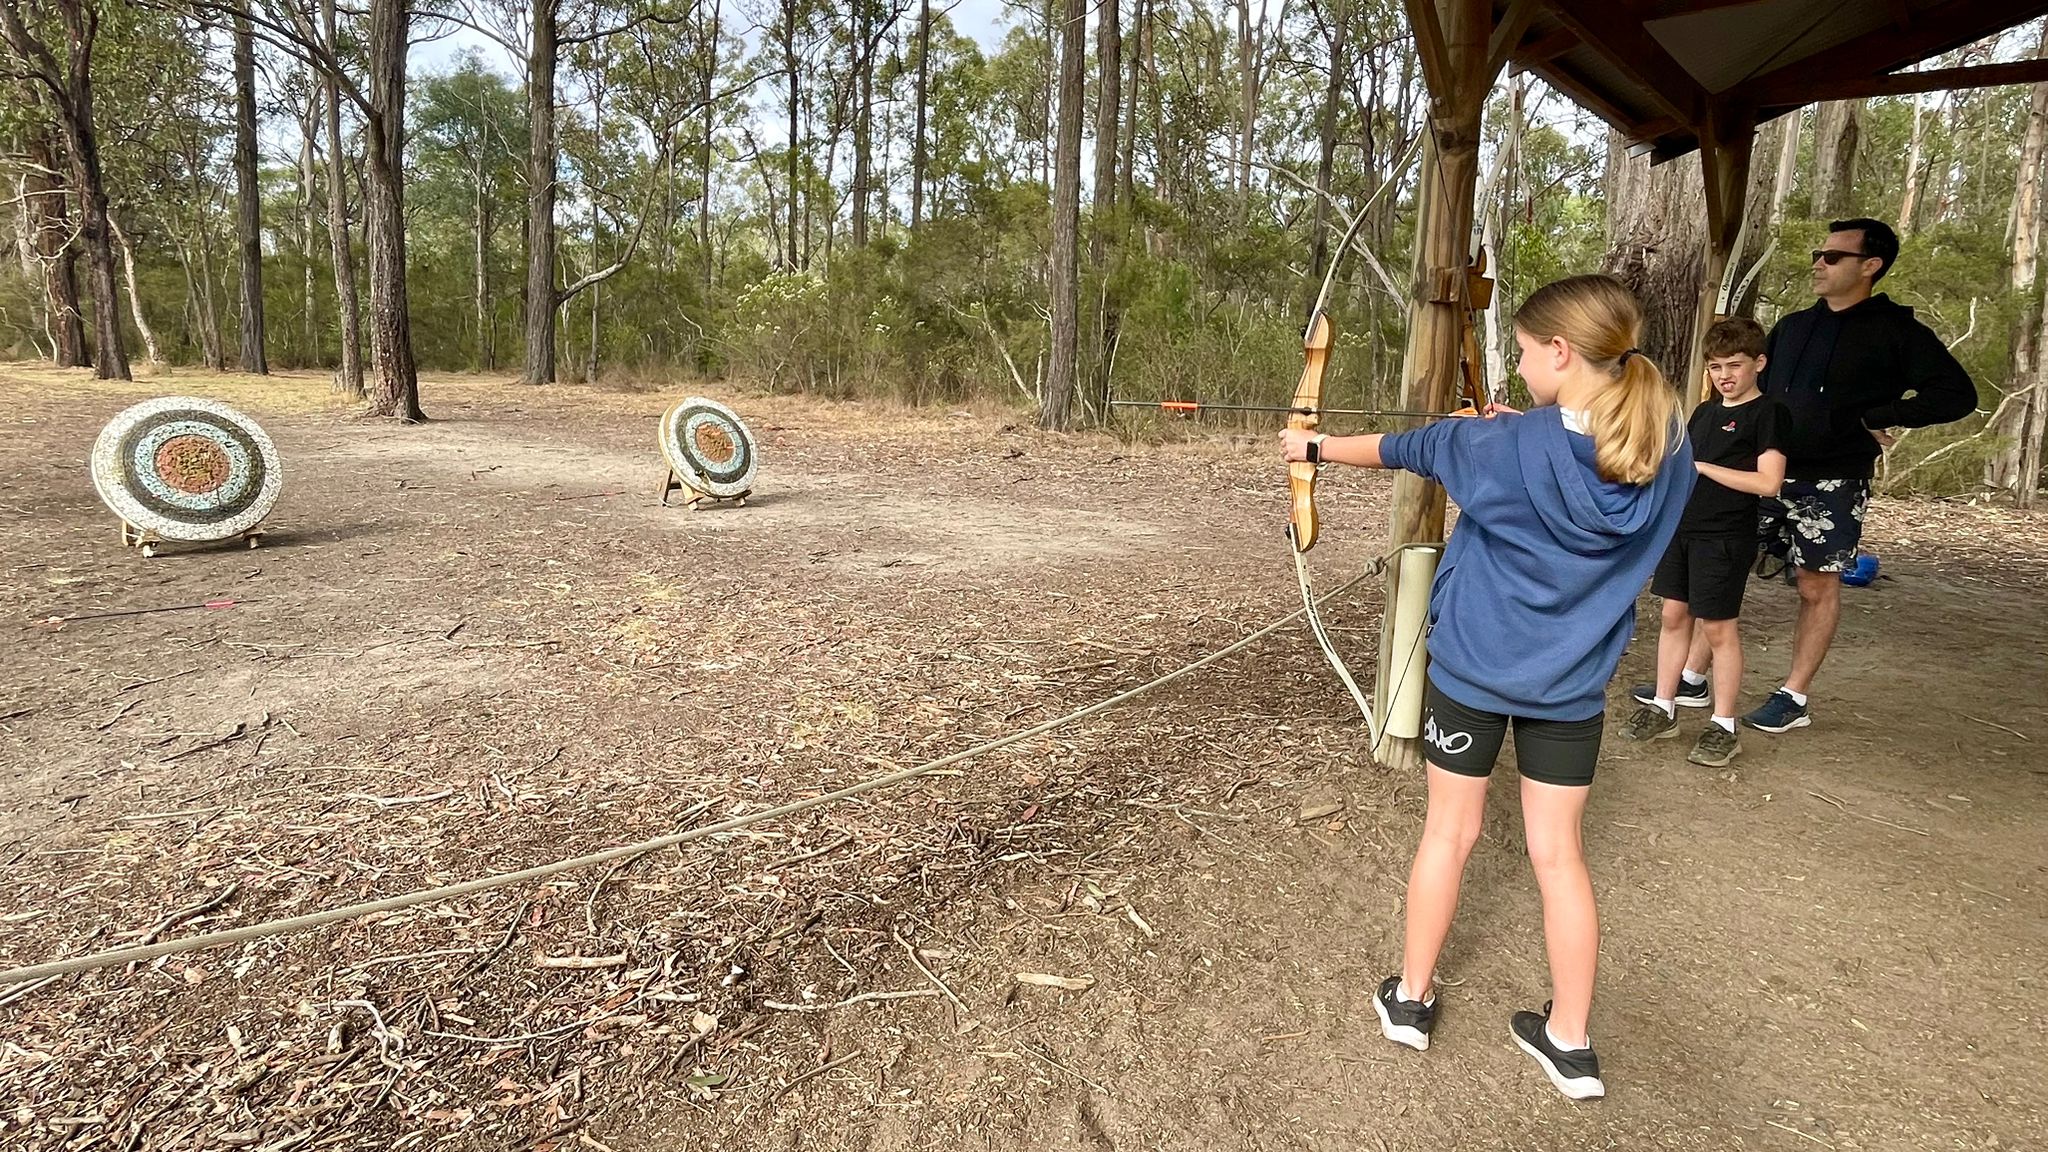 Archery with kids